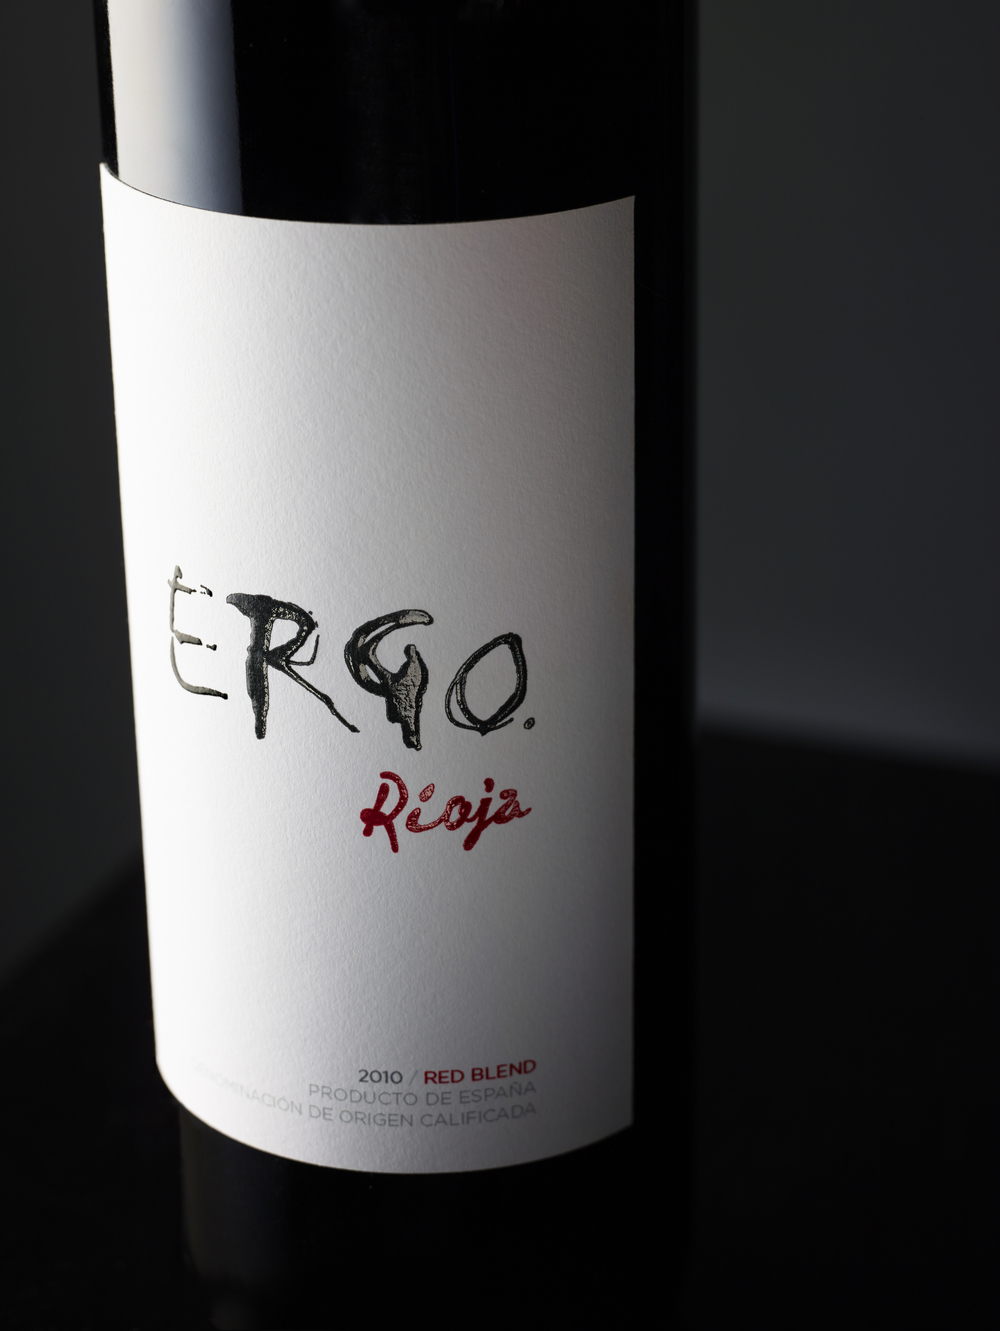  Ergo Rioja 2010/ Red Blend Producto De Espana 750ml 